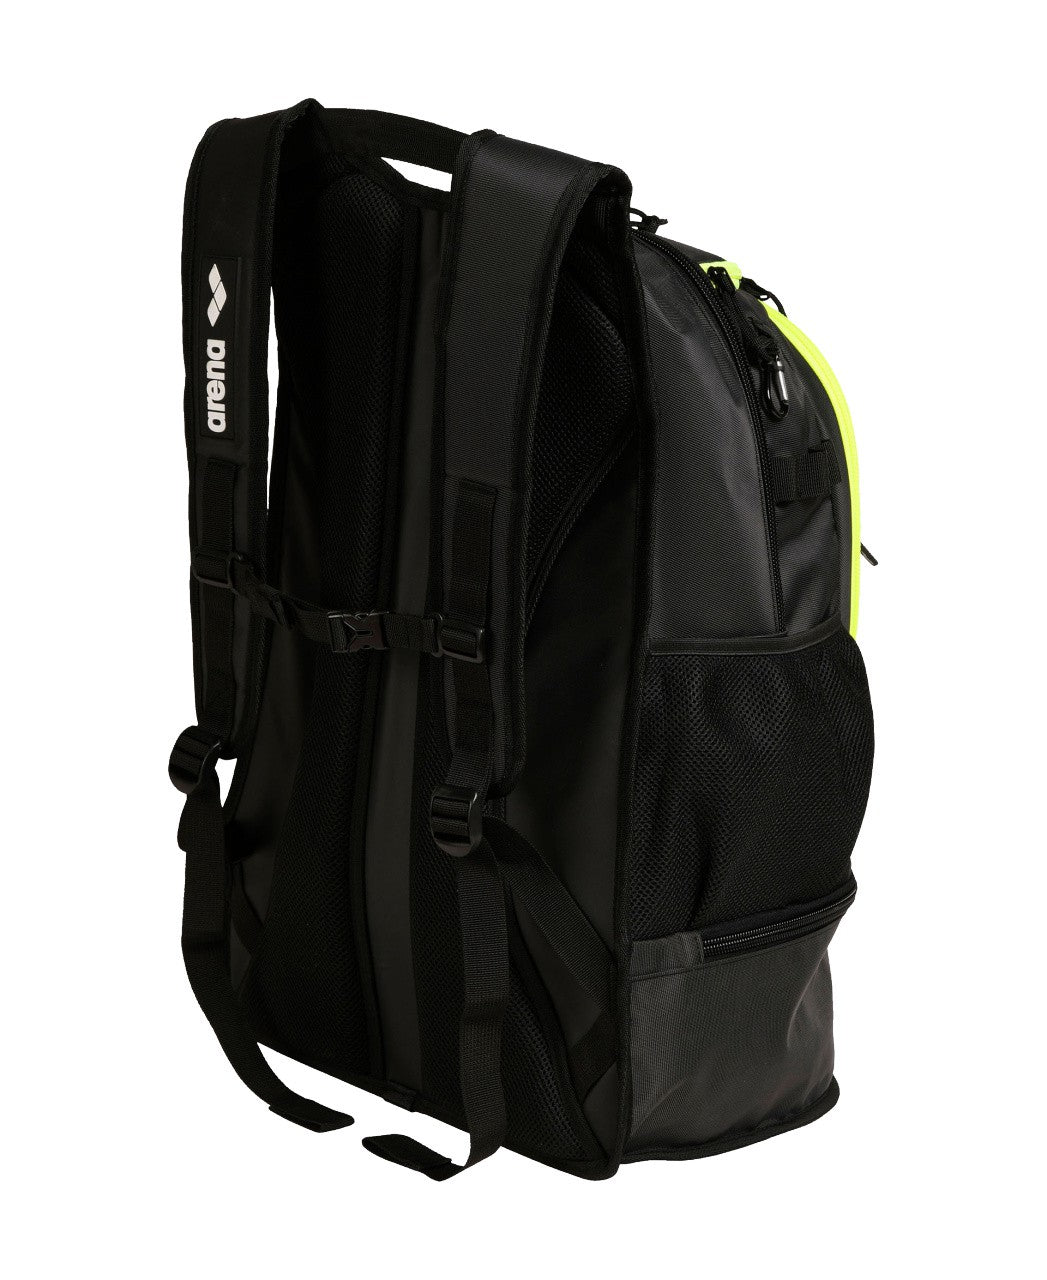 Fastpack 3.0 darksmoke-neonyellow